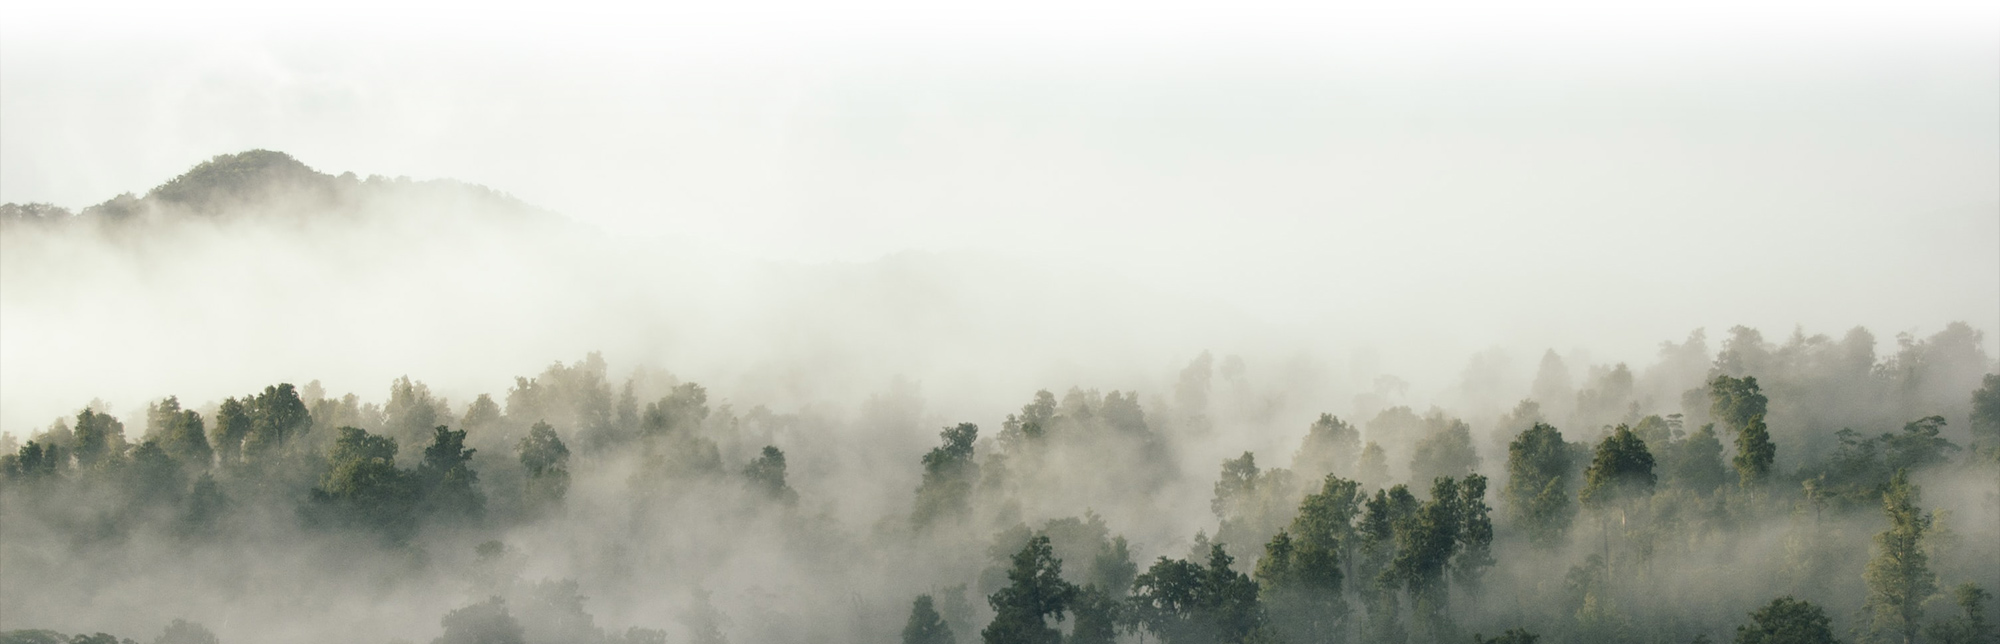 Wald im Nebel von Tobias Tullius, Unsplash